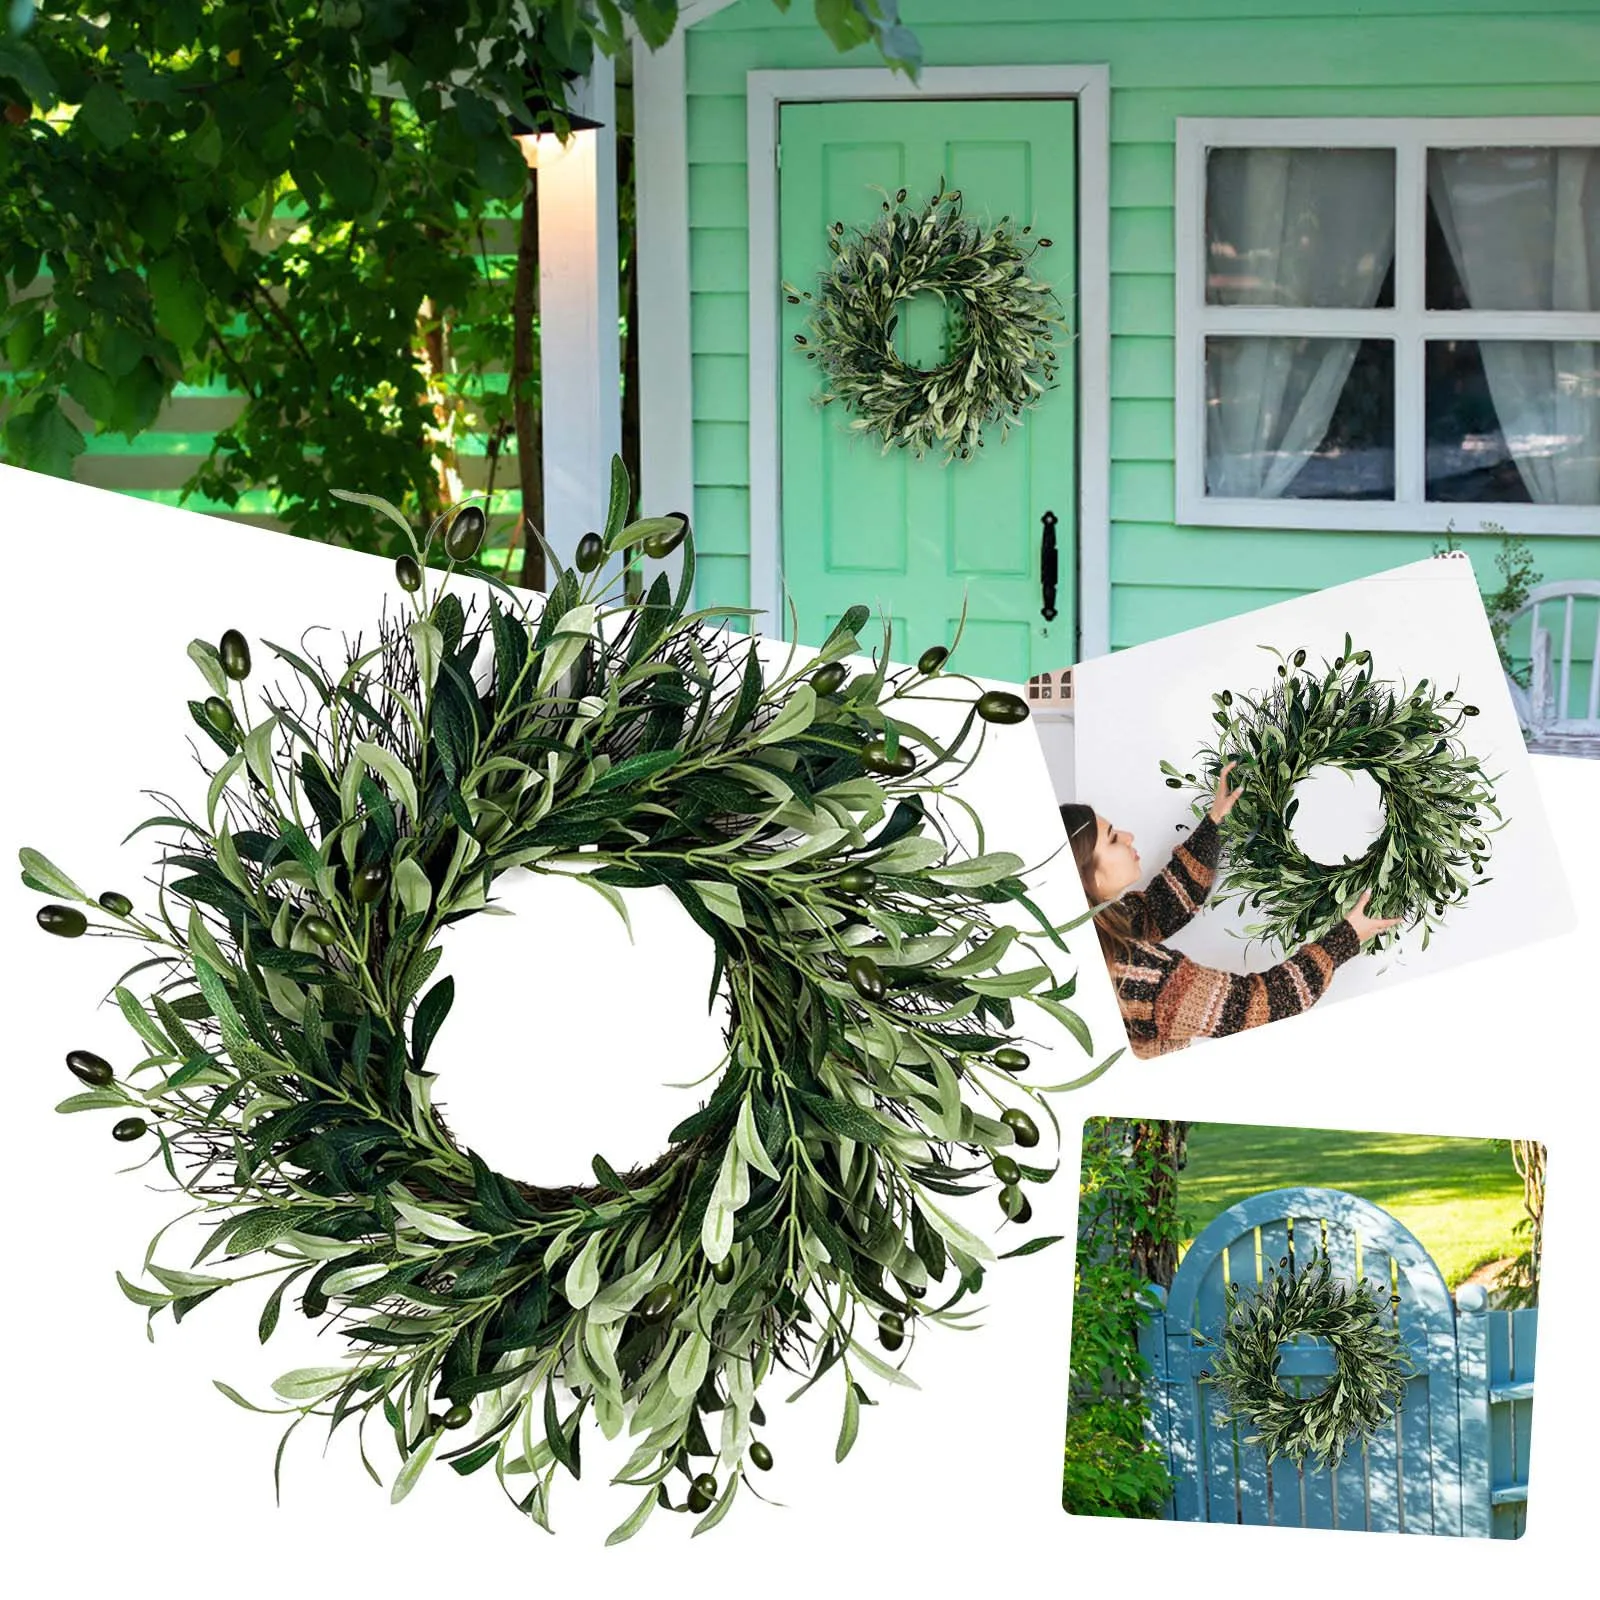 

Olive Fruit Wreath Porch Decoration Front Door Outdoor Hanging Wreath Decor Fall Decor Wreath Boxwood Wreaths for Front Door